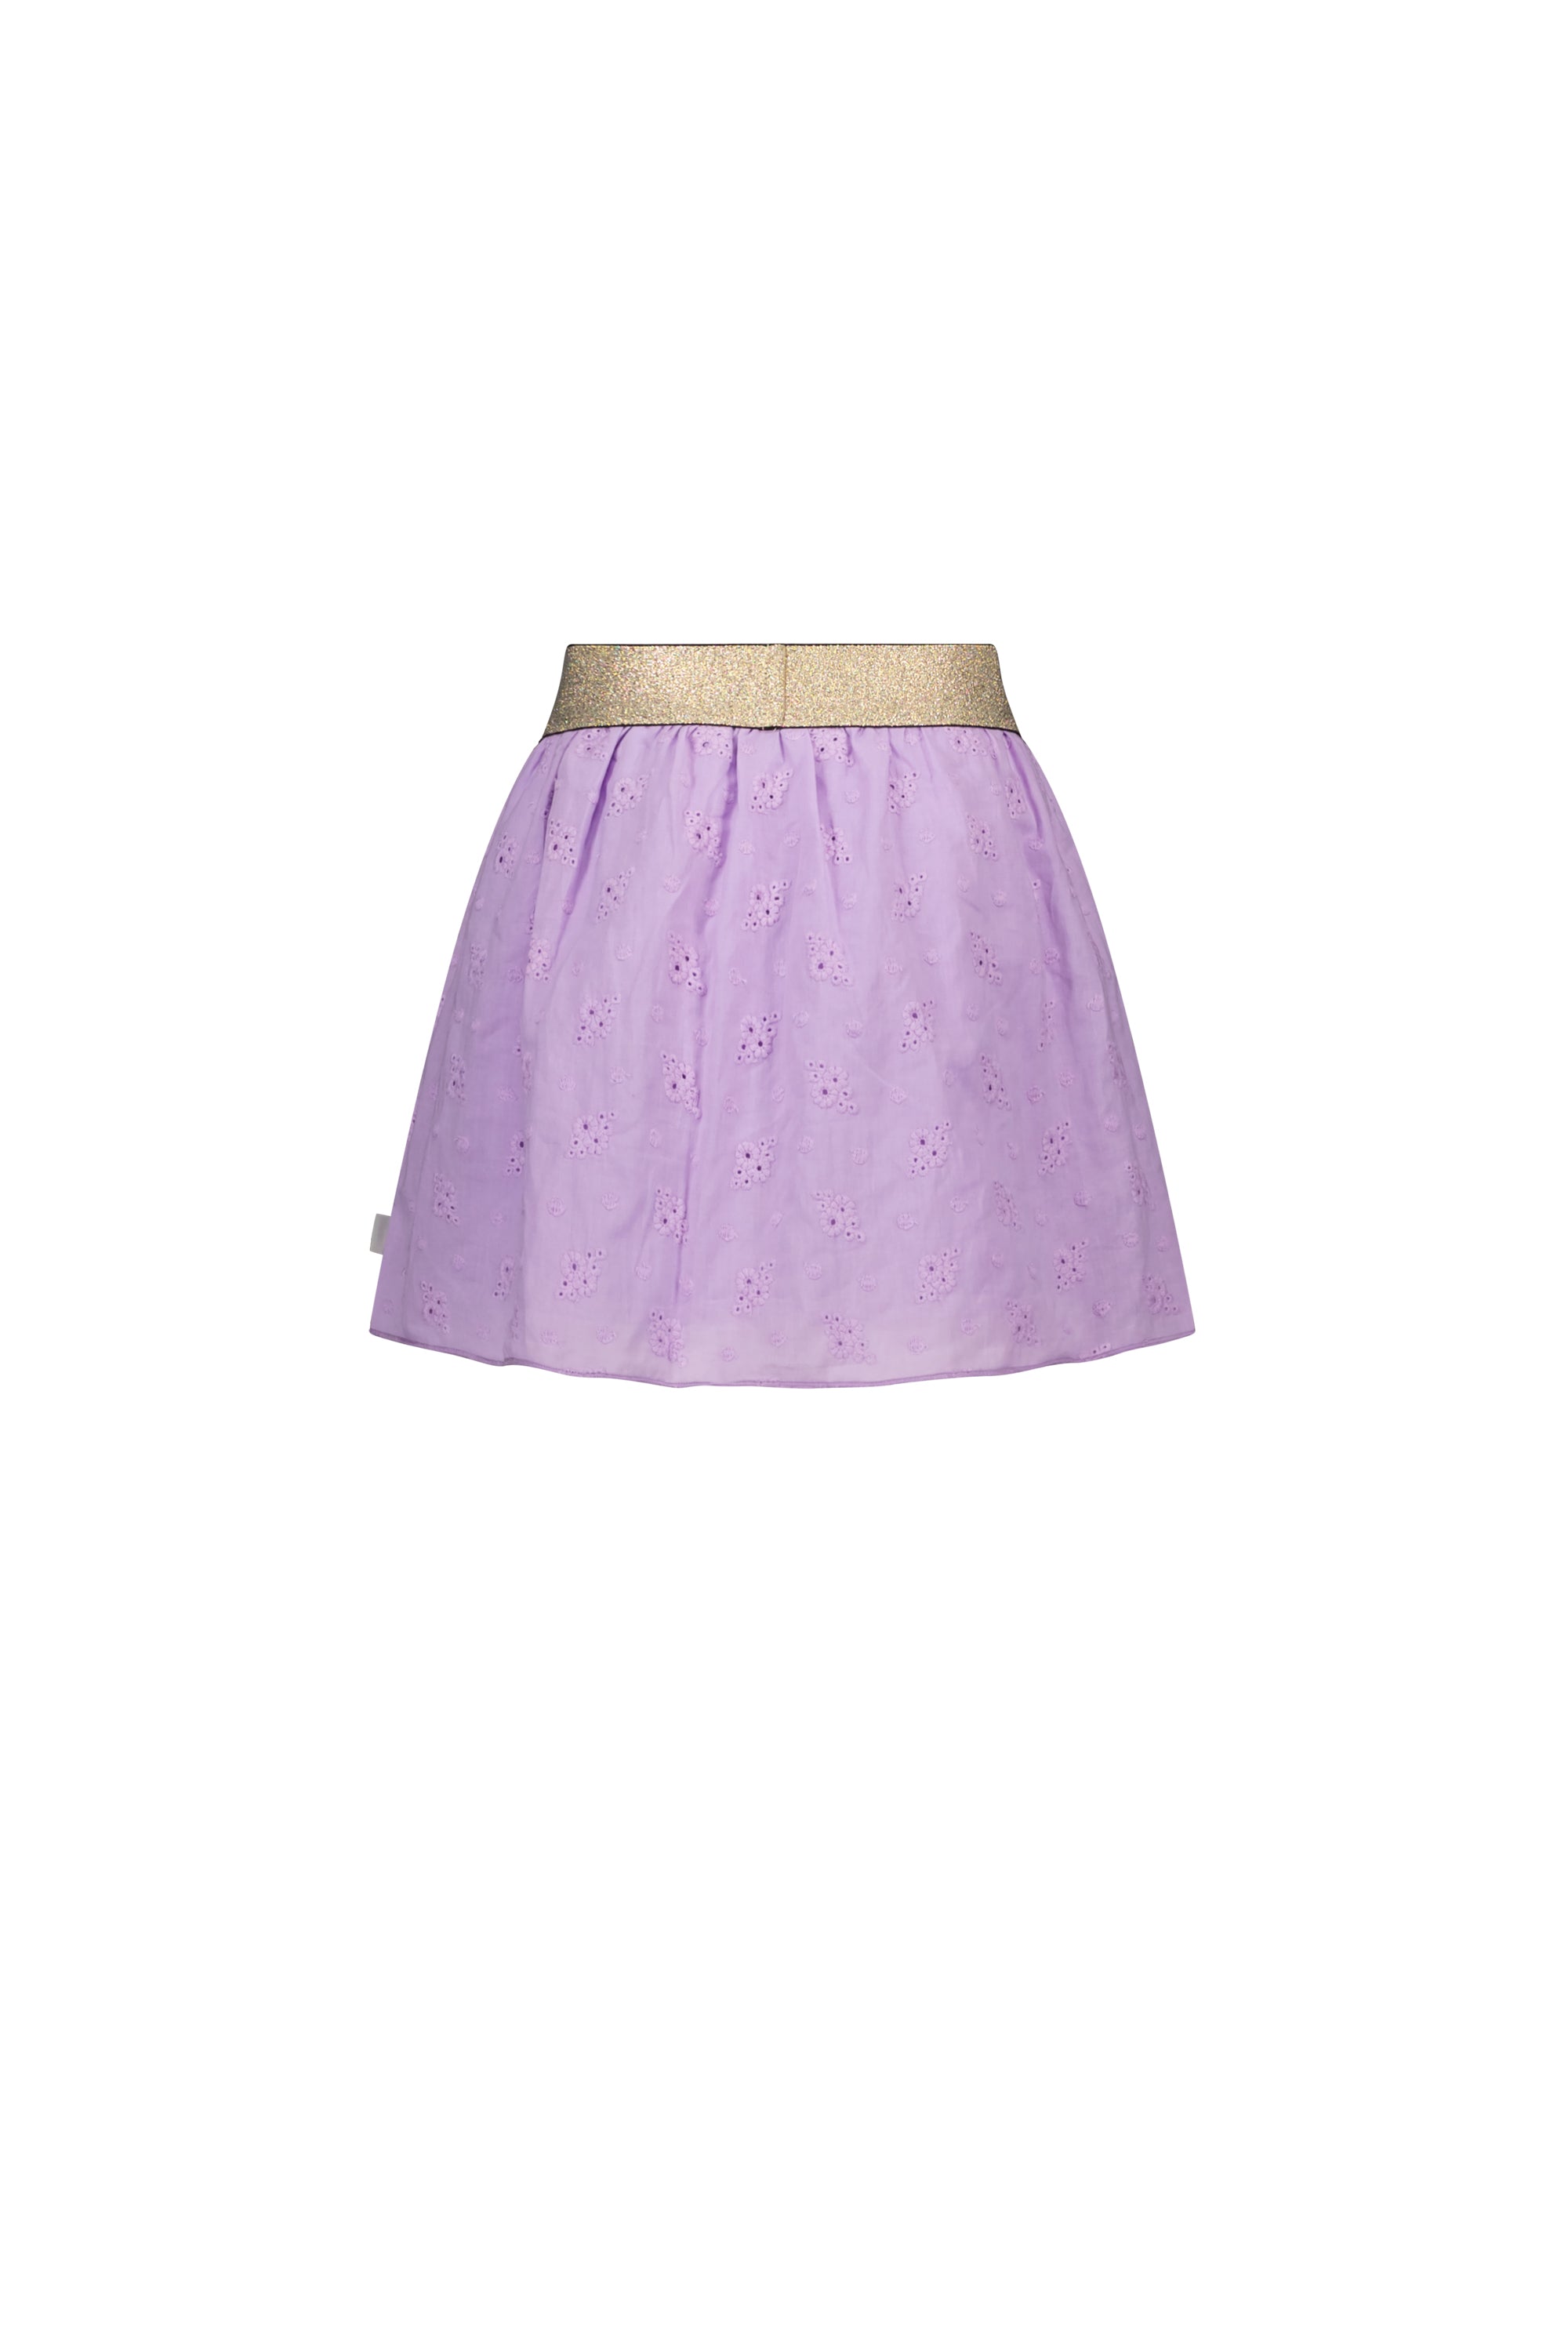 Moodstreet MT Skirt Fancy Fabric